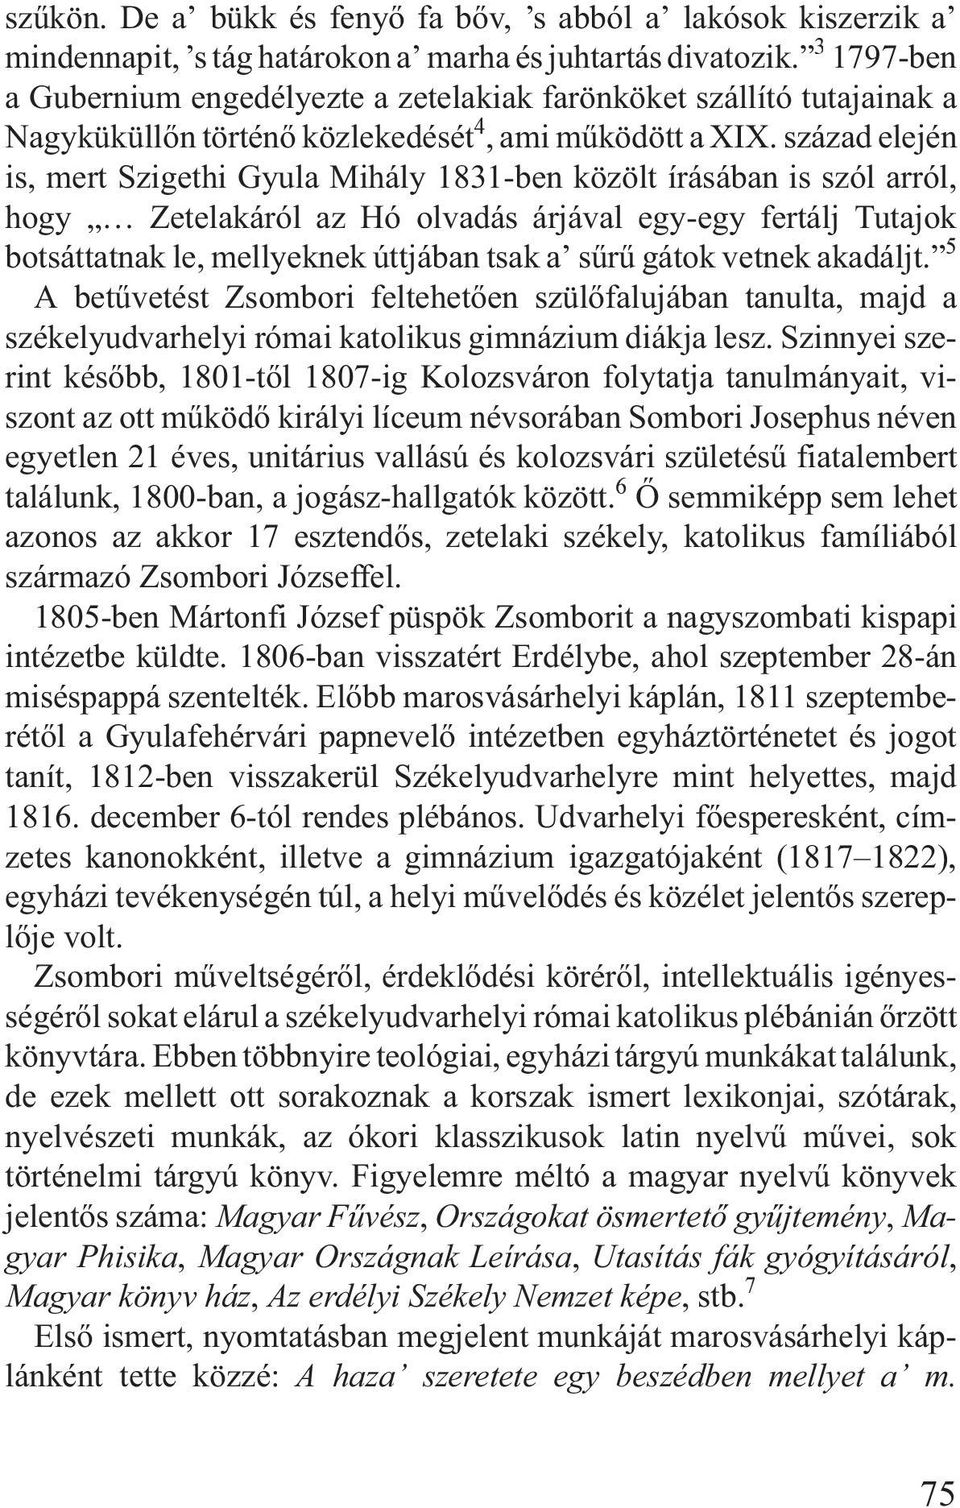 század elején is, mert Szigethi Gyula Mihály 1831-ben közölt írásában is szól arról, hogy Zetelakáról az Hó olvadás árjával egy-egy fertálj Tutajok botsáttatnak le, mellyeknek úttjában tsak a sûrû